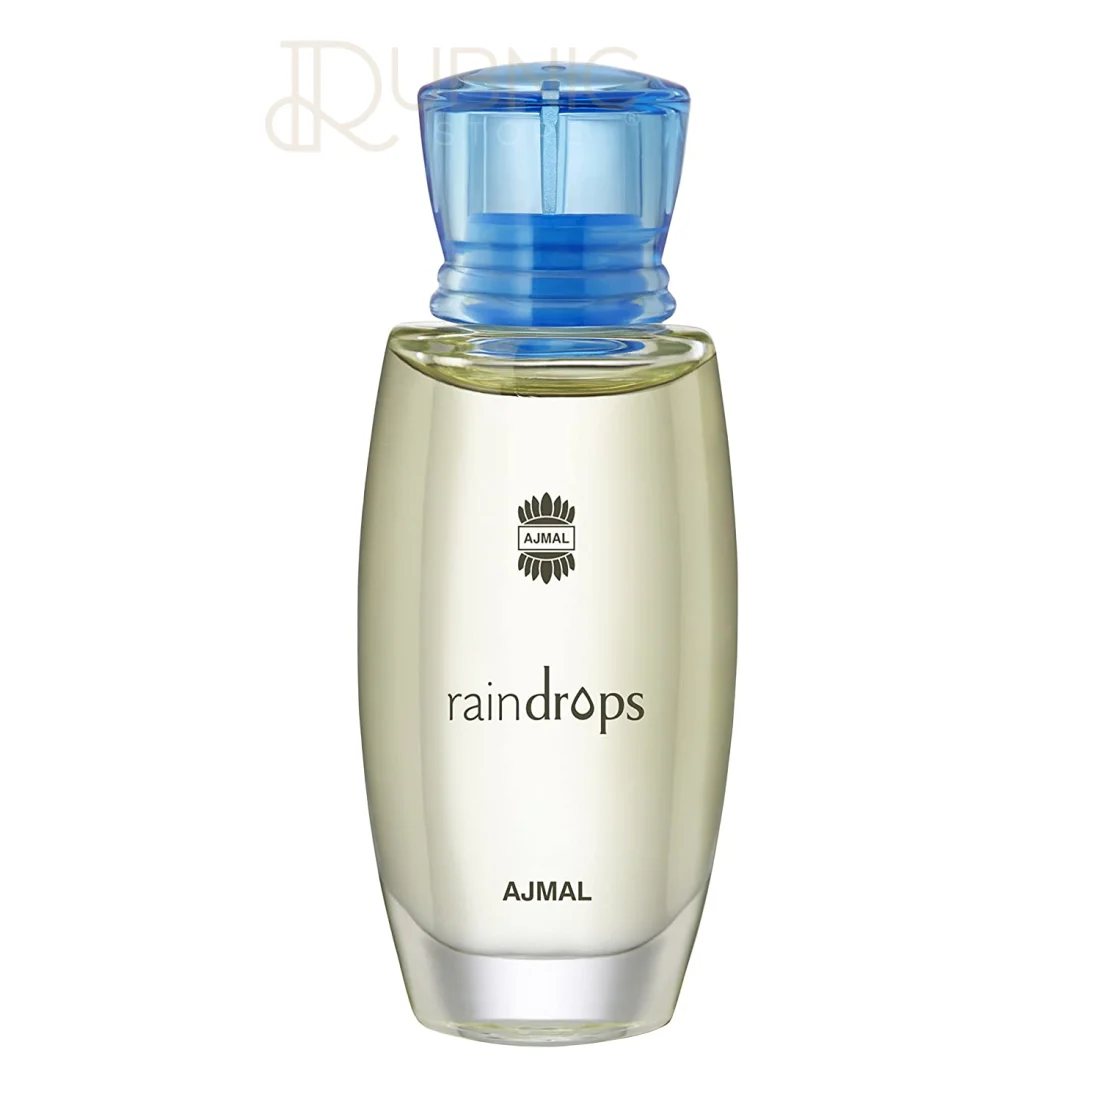 Ajmal Raindrops Pour Femme Perfume Deodorant 200 ml For Women | eBay